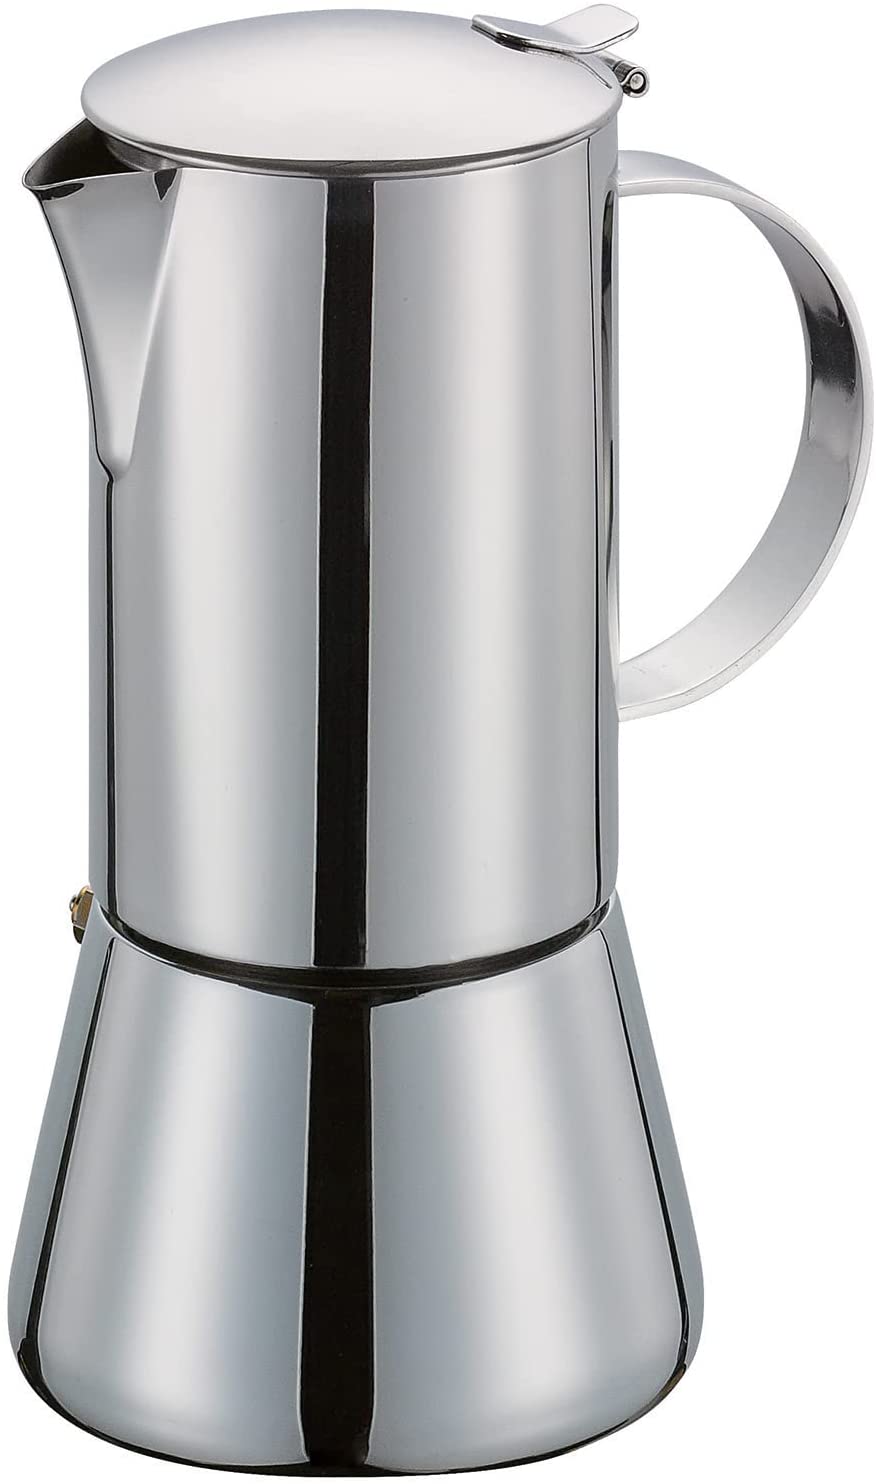 Cilio Aida 342246 Espresso Maker 10 Cups